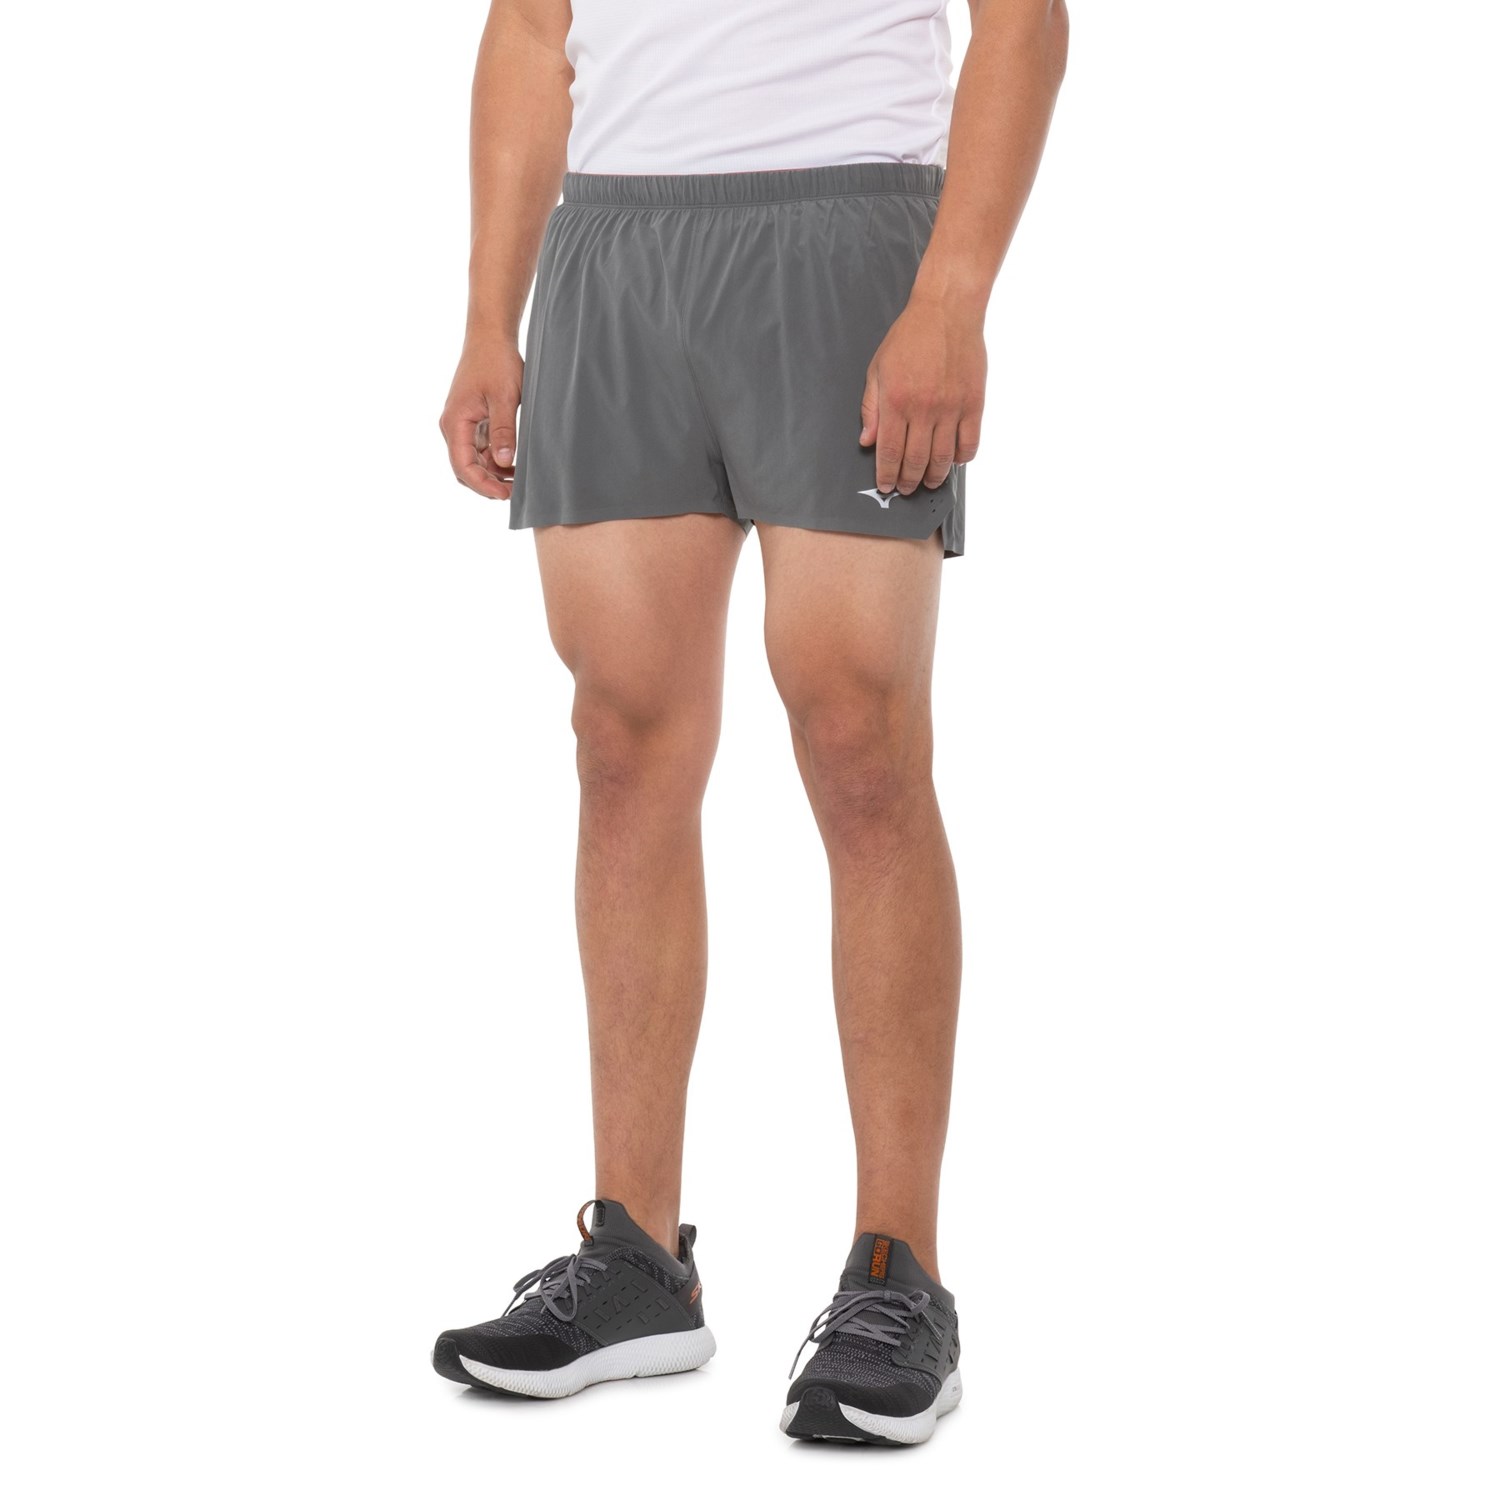 Mizuno Elite Aero Split Shorts (For Men) - Save 37%